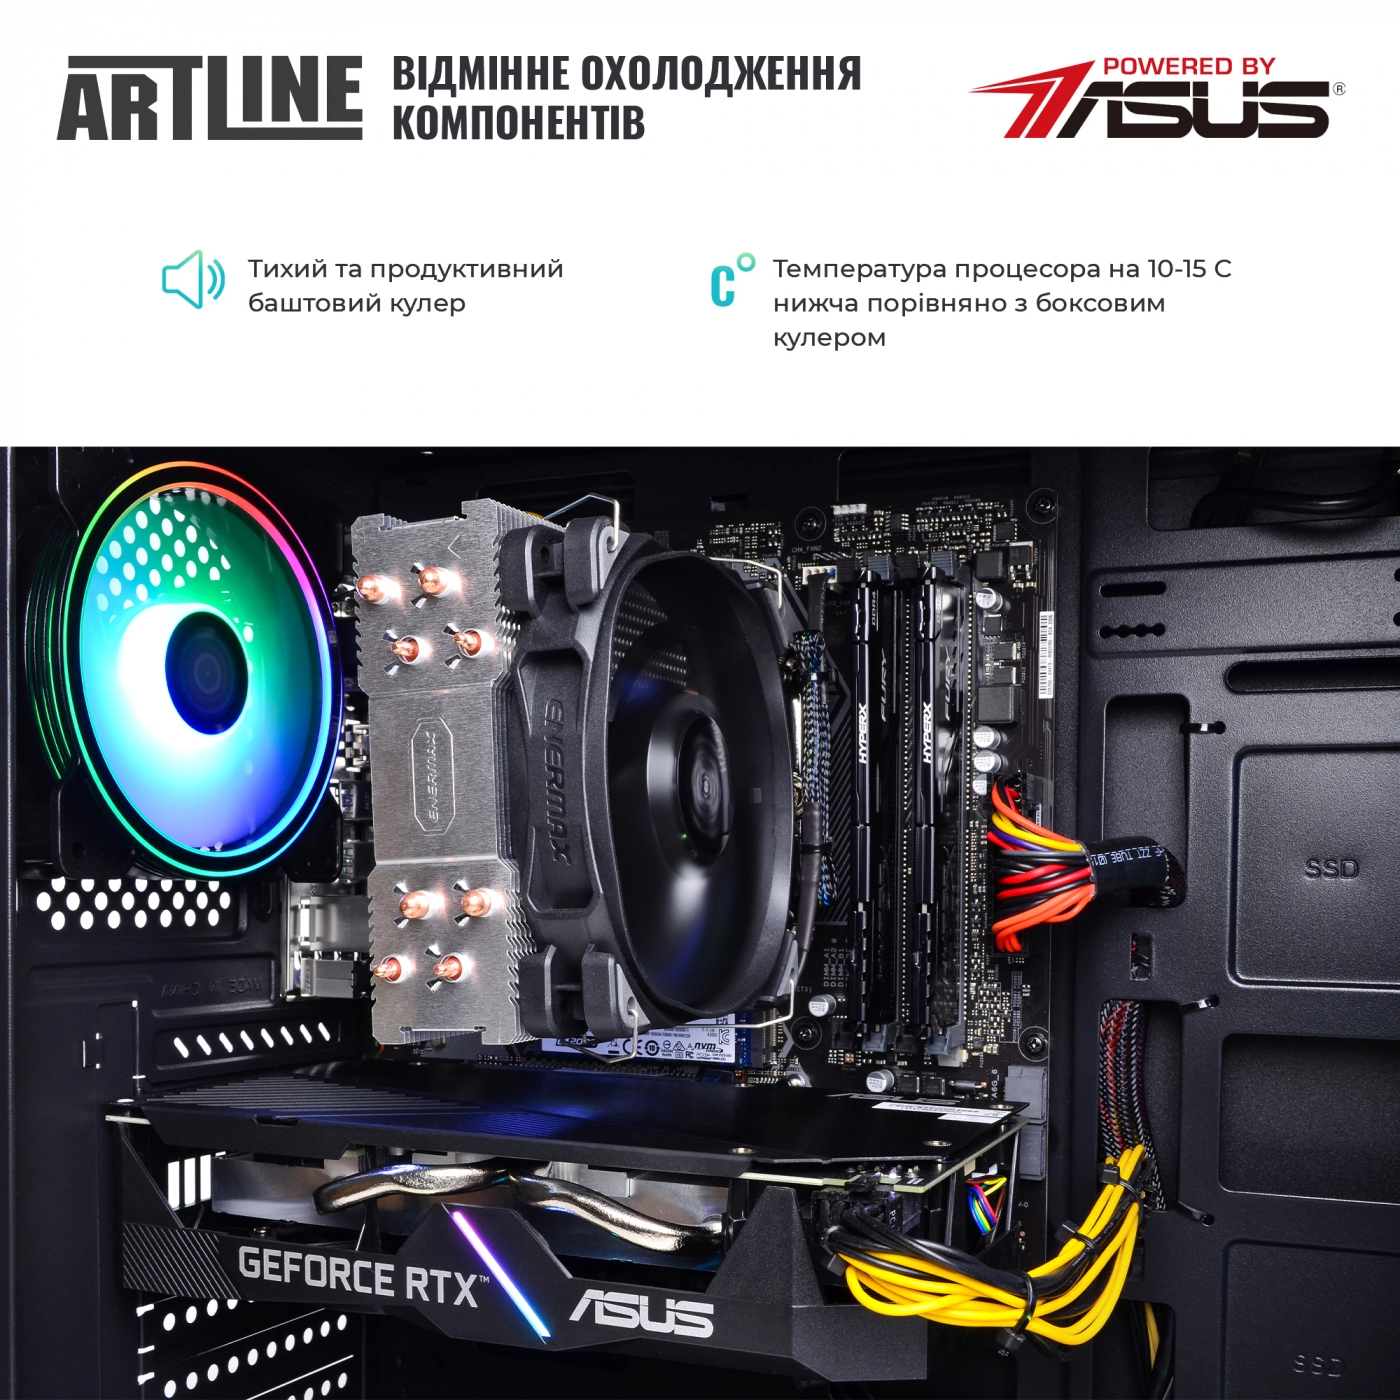 Купить Компьютер ARTLINE Gaming X81v15 - фото 7